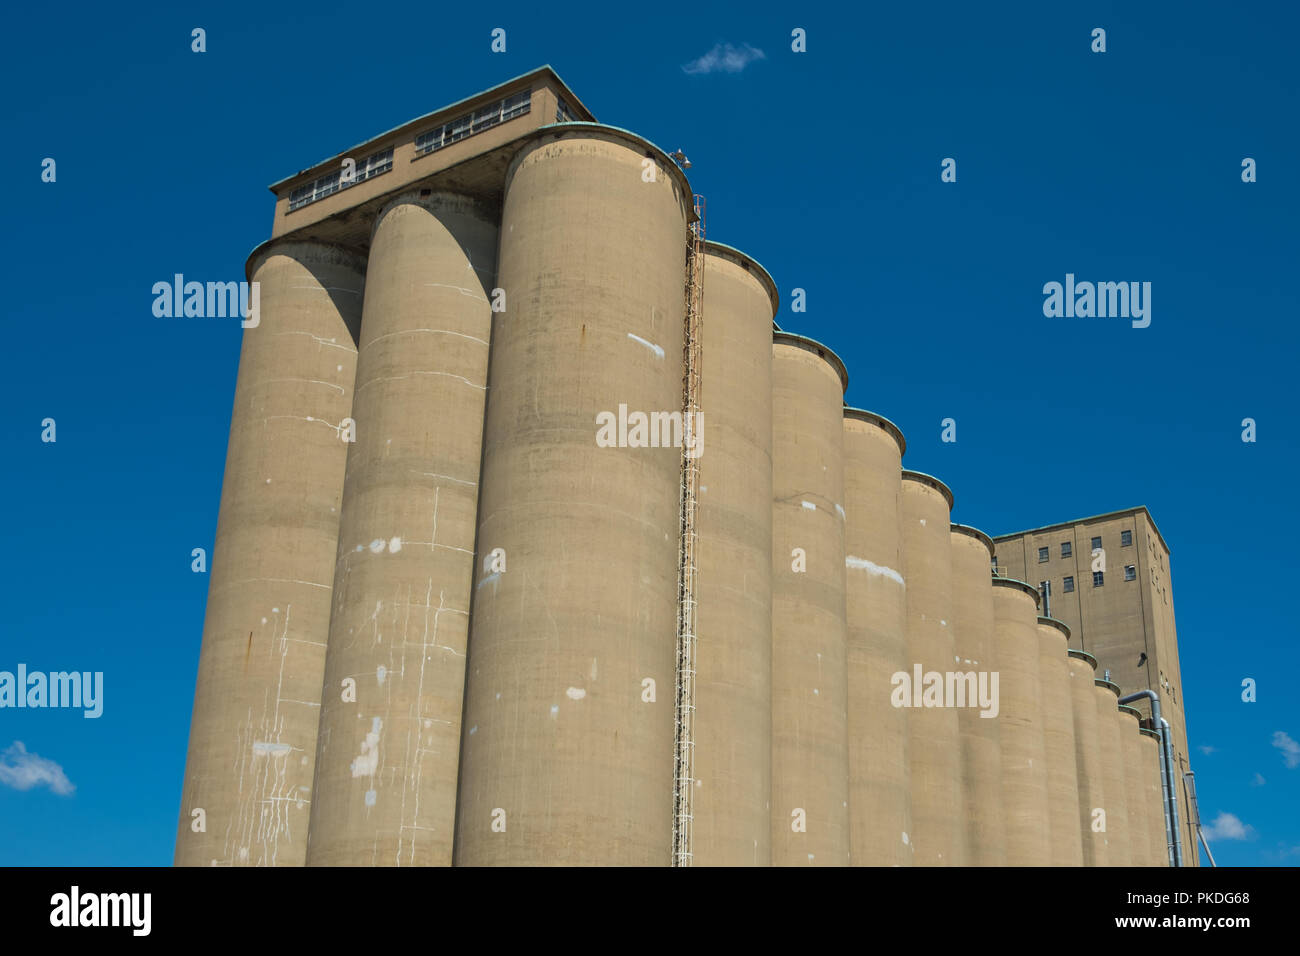 Blick auf ein Aufzug, eine agrarische Facility komplexe verwendet zu horten und Getreidespeicher Stockfoto